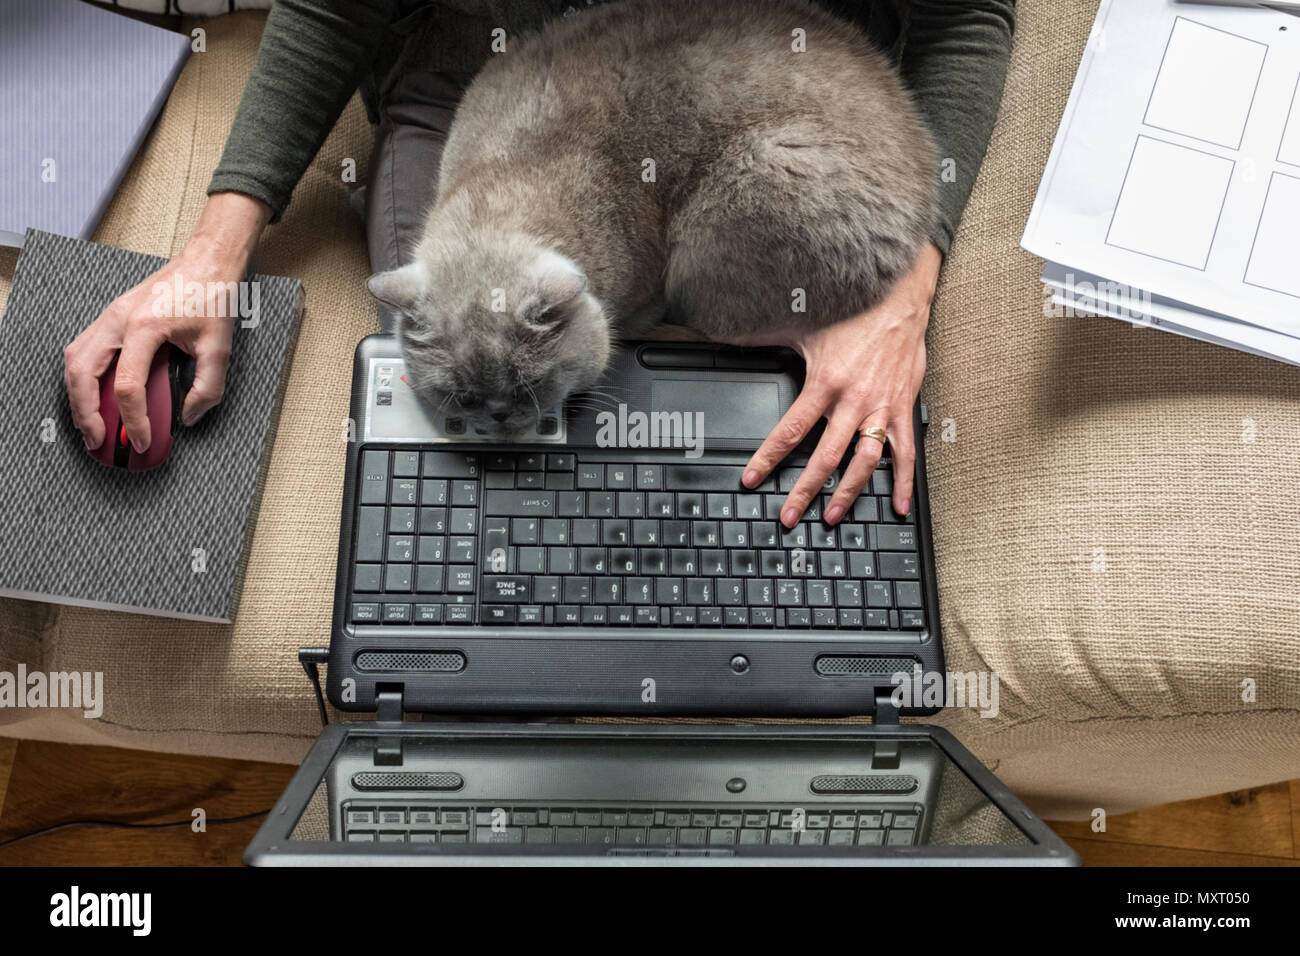 Una donna seduta su un divano con un gatto grigio addormentato sul suo computer portatile. Foto Stock